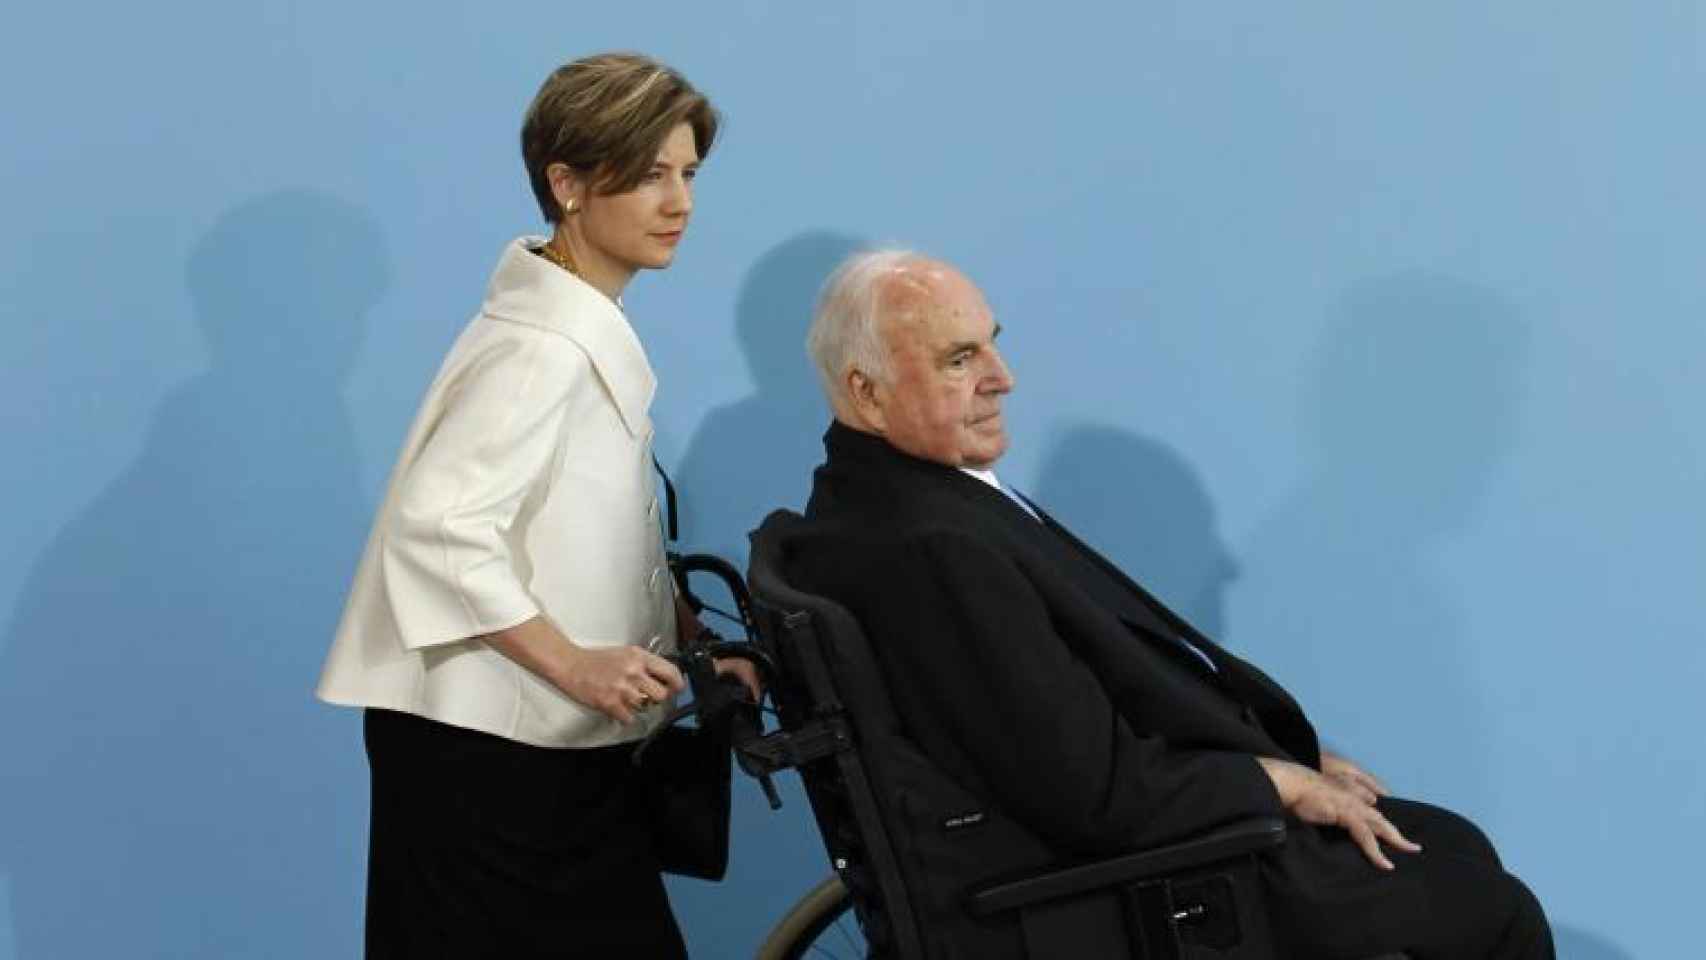 Maike Richter llevando en silla de ruedas a Helmut Kohl.